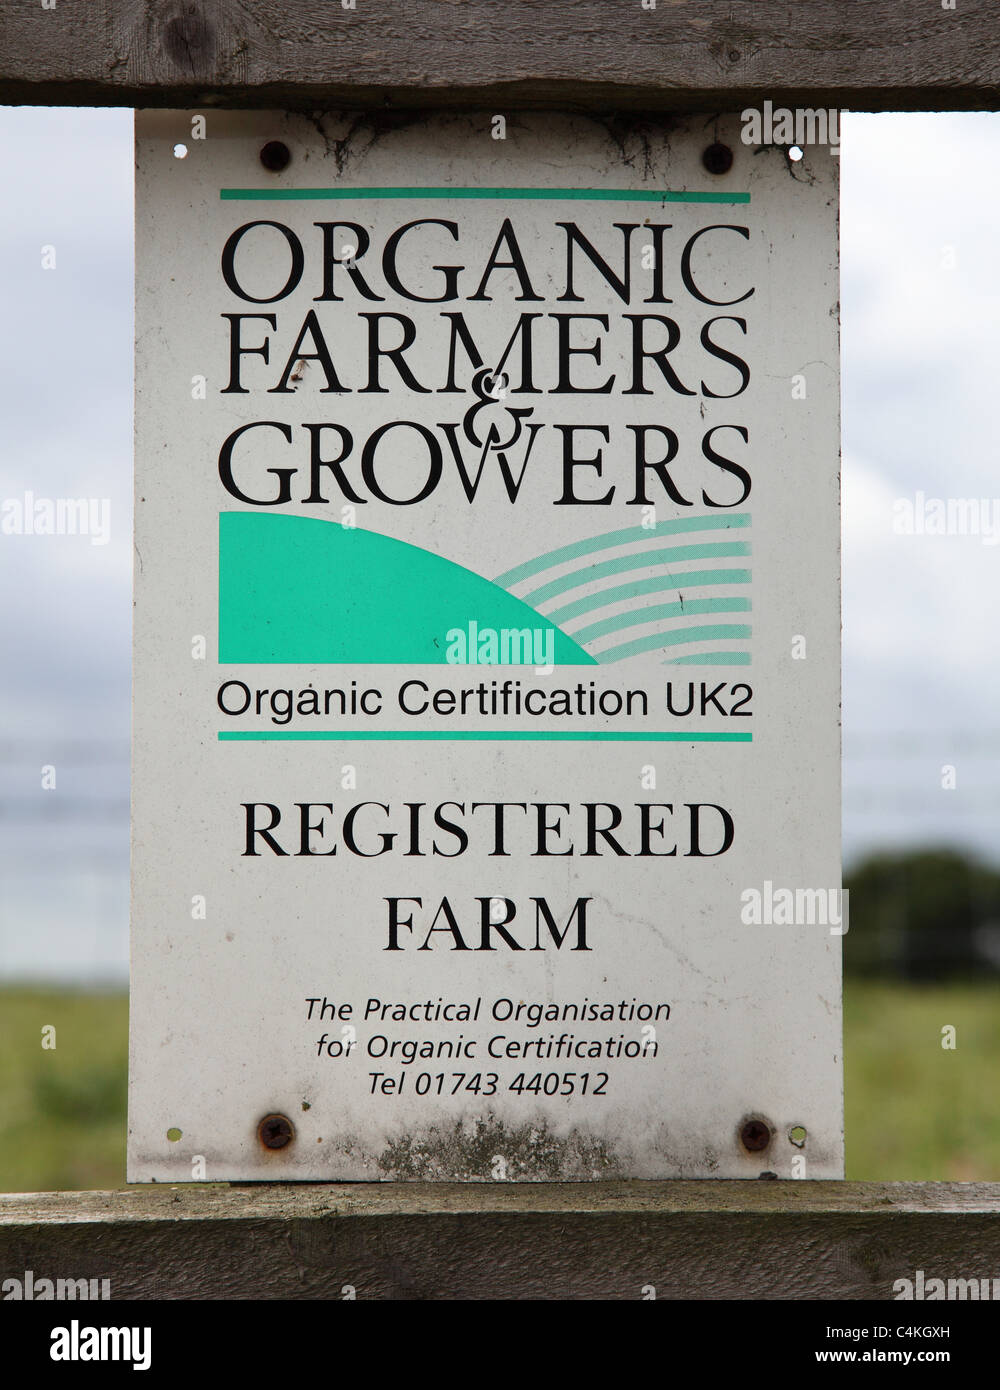 An organic farm in the U.K. Stock Photo